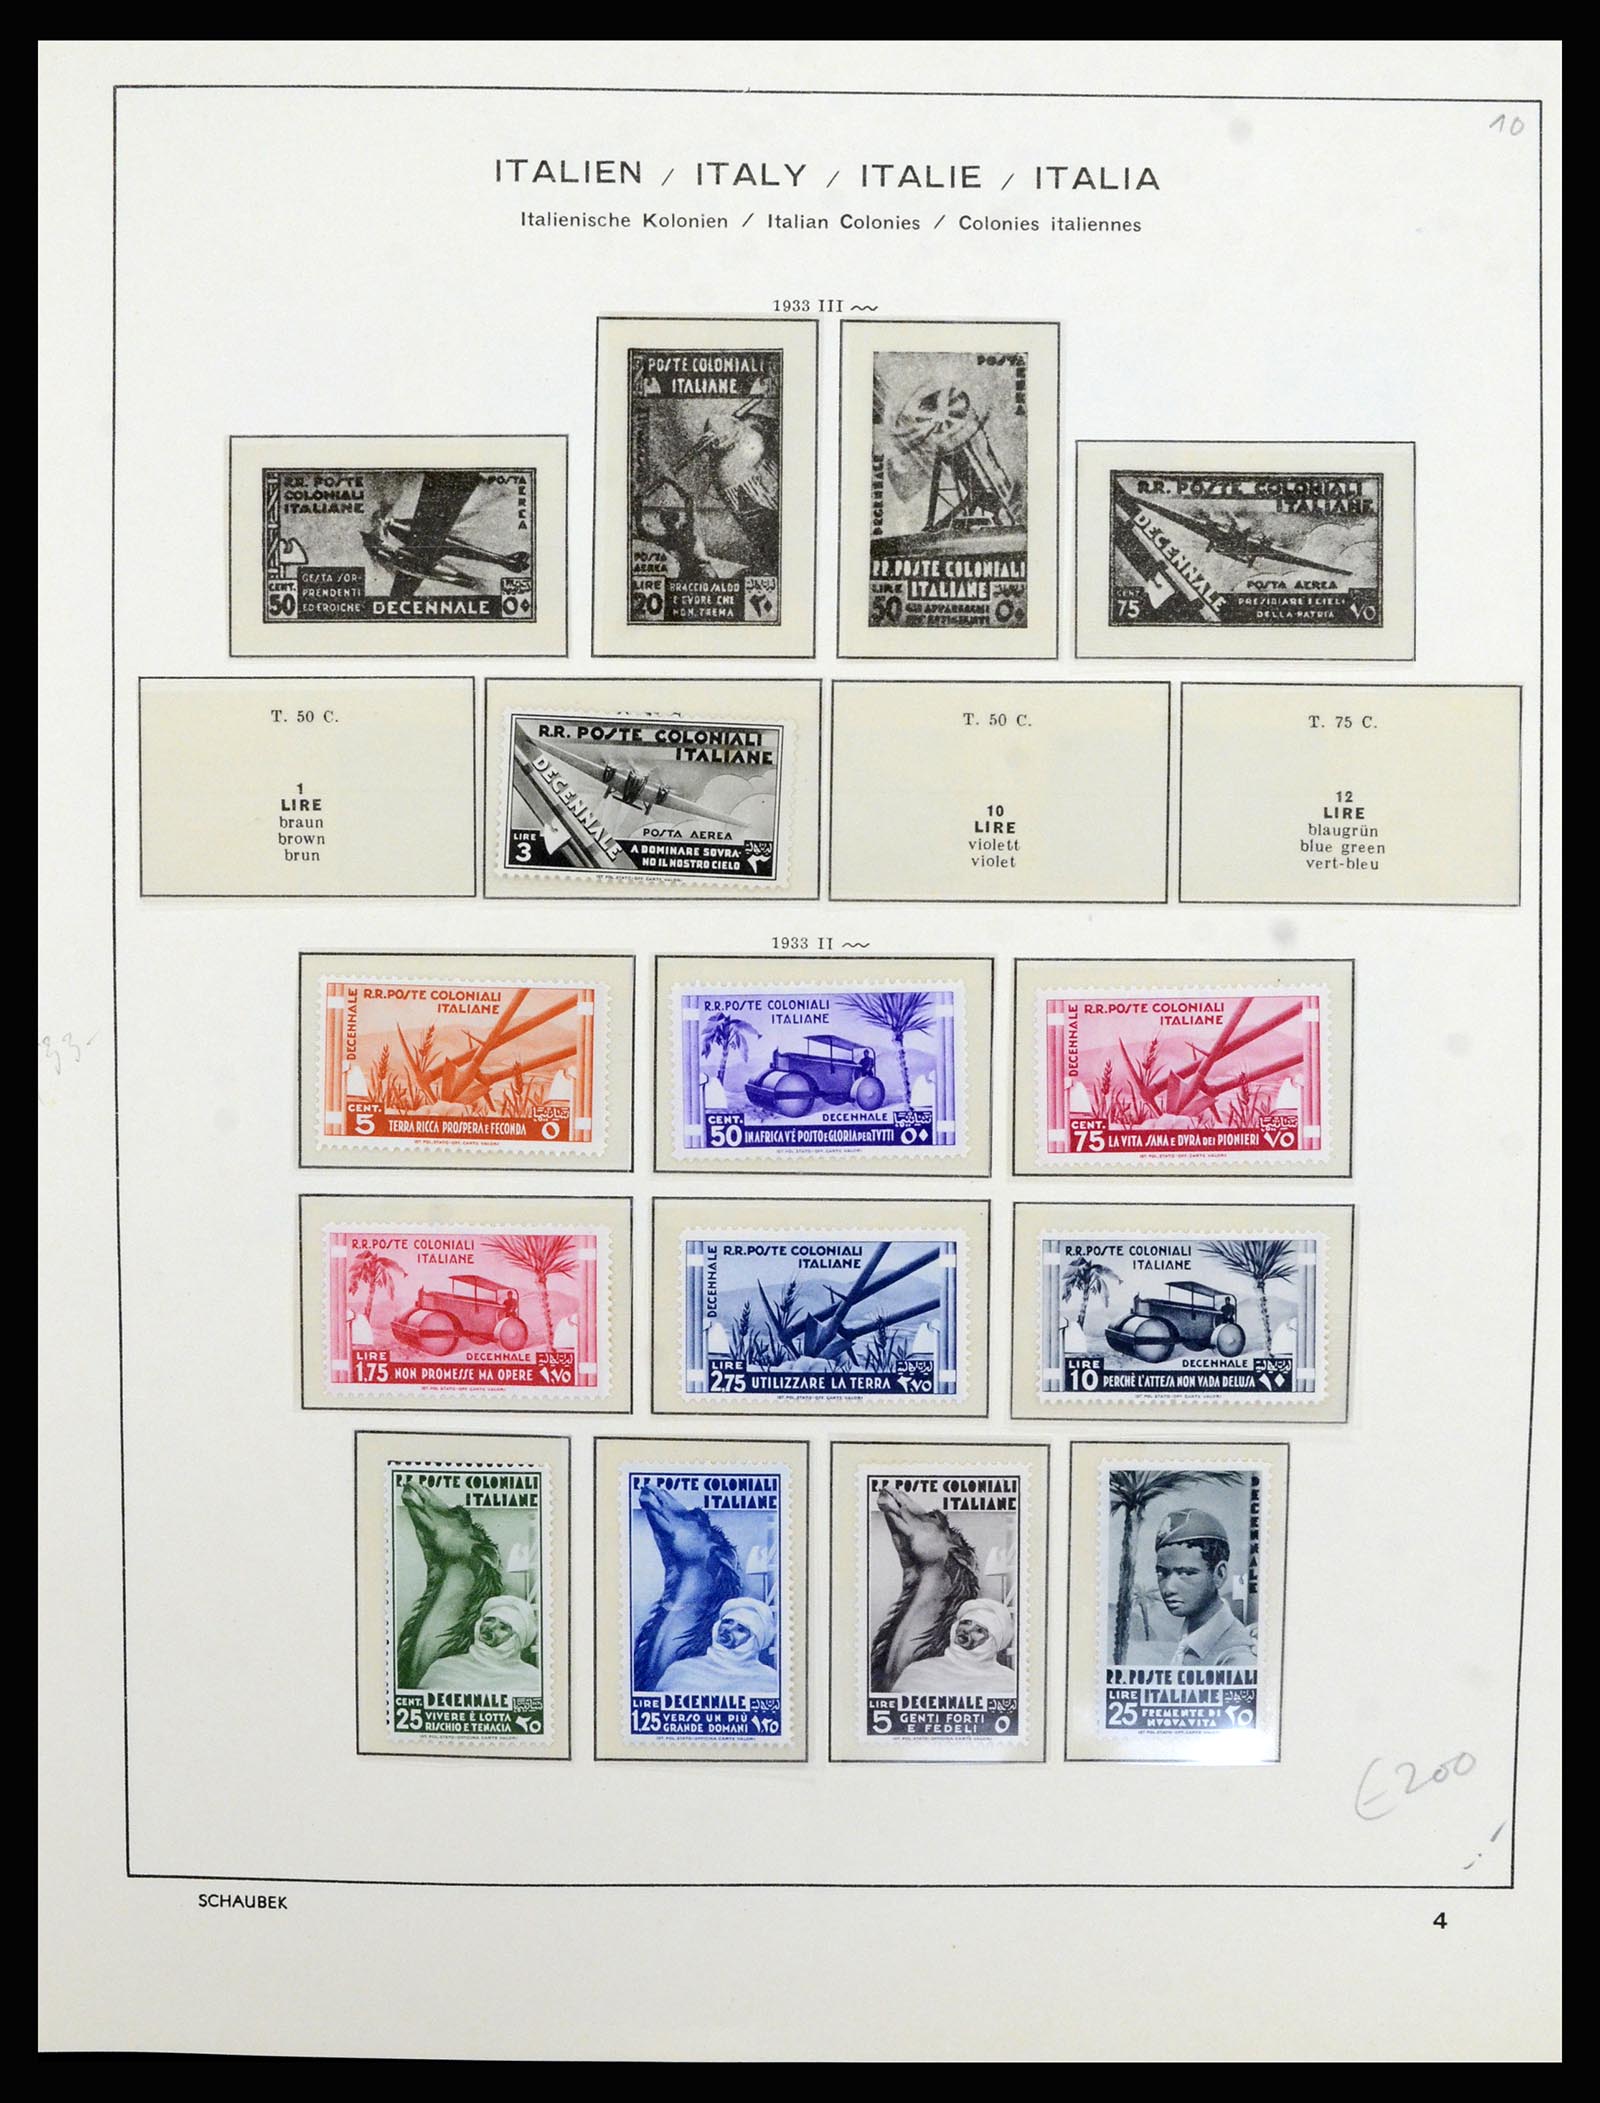 36577 025 - Stamp collection 36577 Italiaanse gebieden 1870-1940.